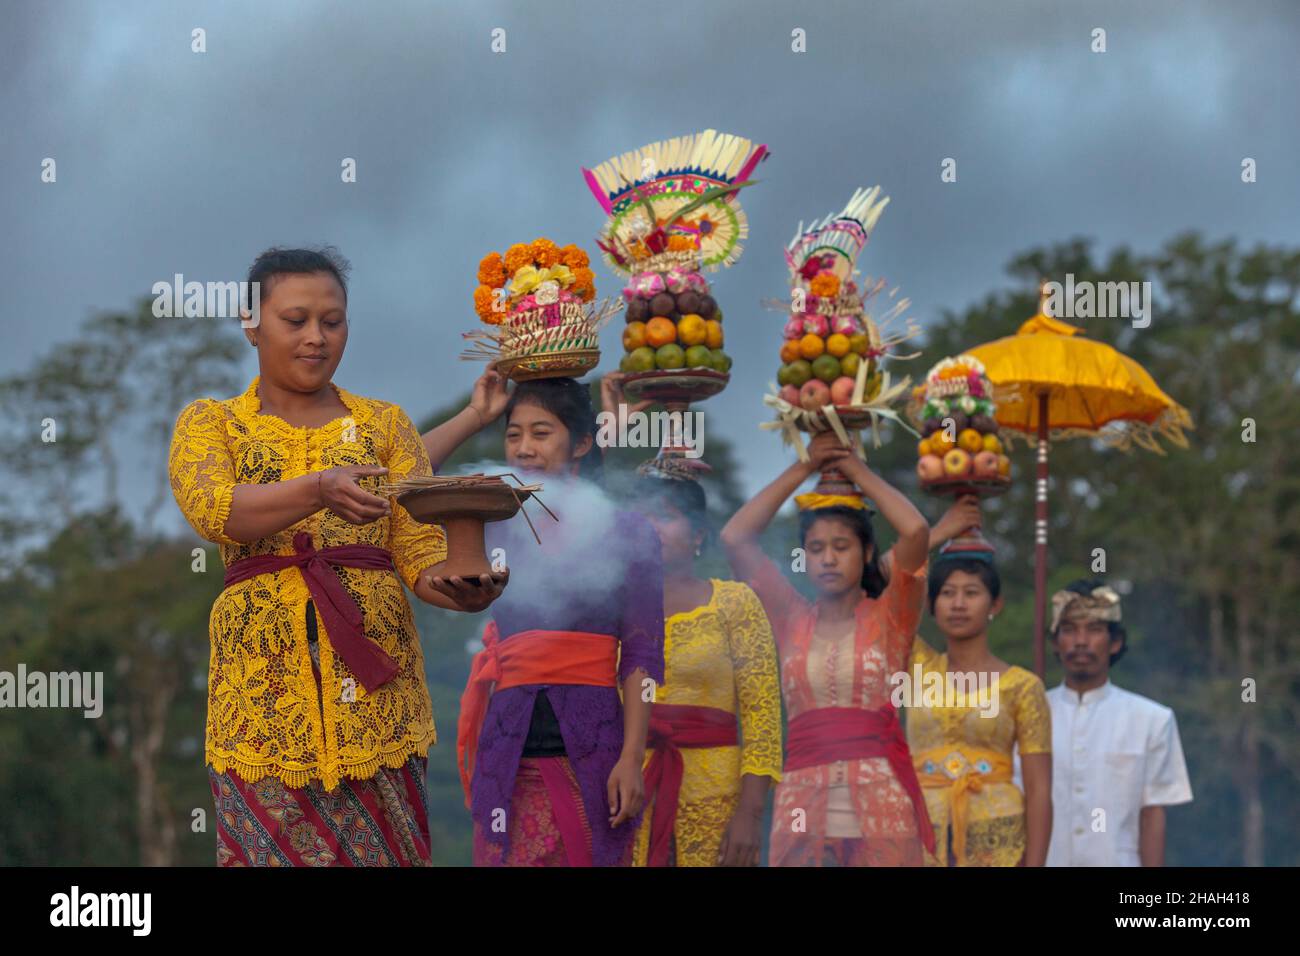 Las mujeres indonesias, tradicionalmente vestidas, llevan frutas y flores cerca del templo y lago de Tamblingan, Bali. Foto de stock